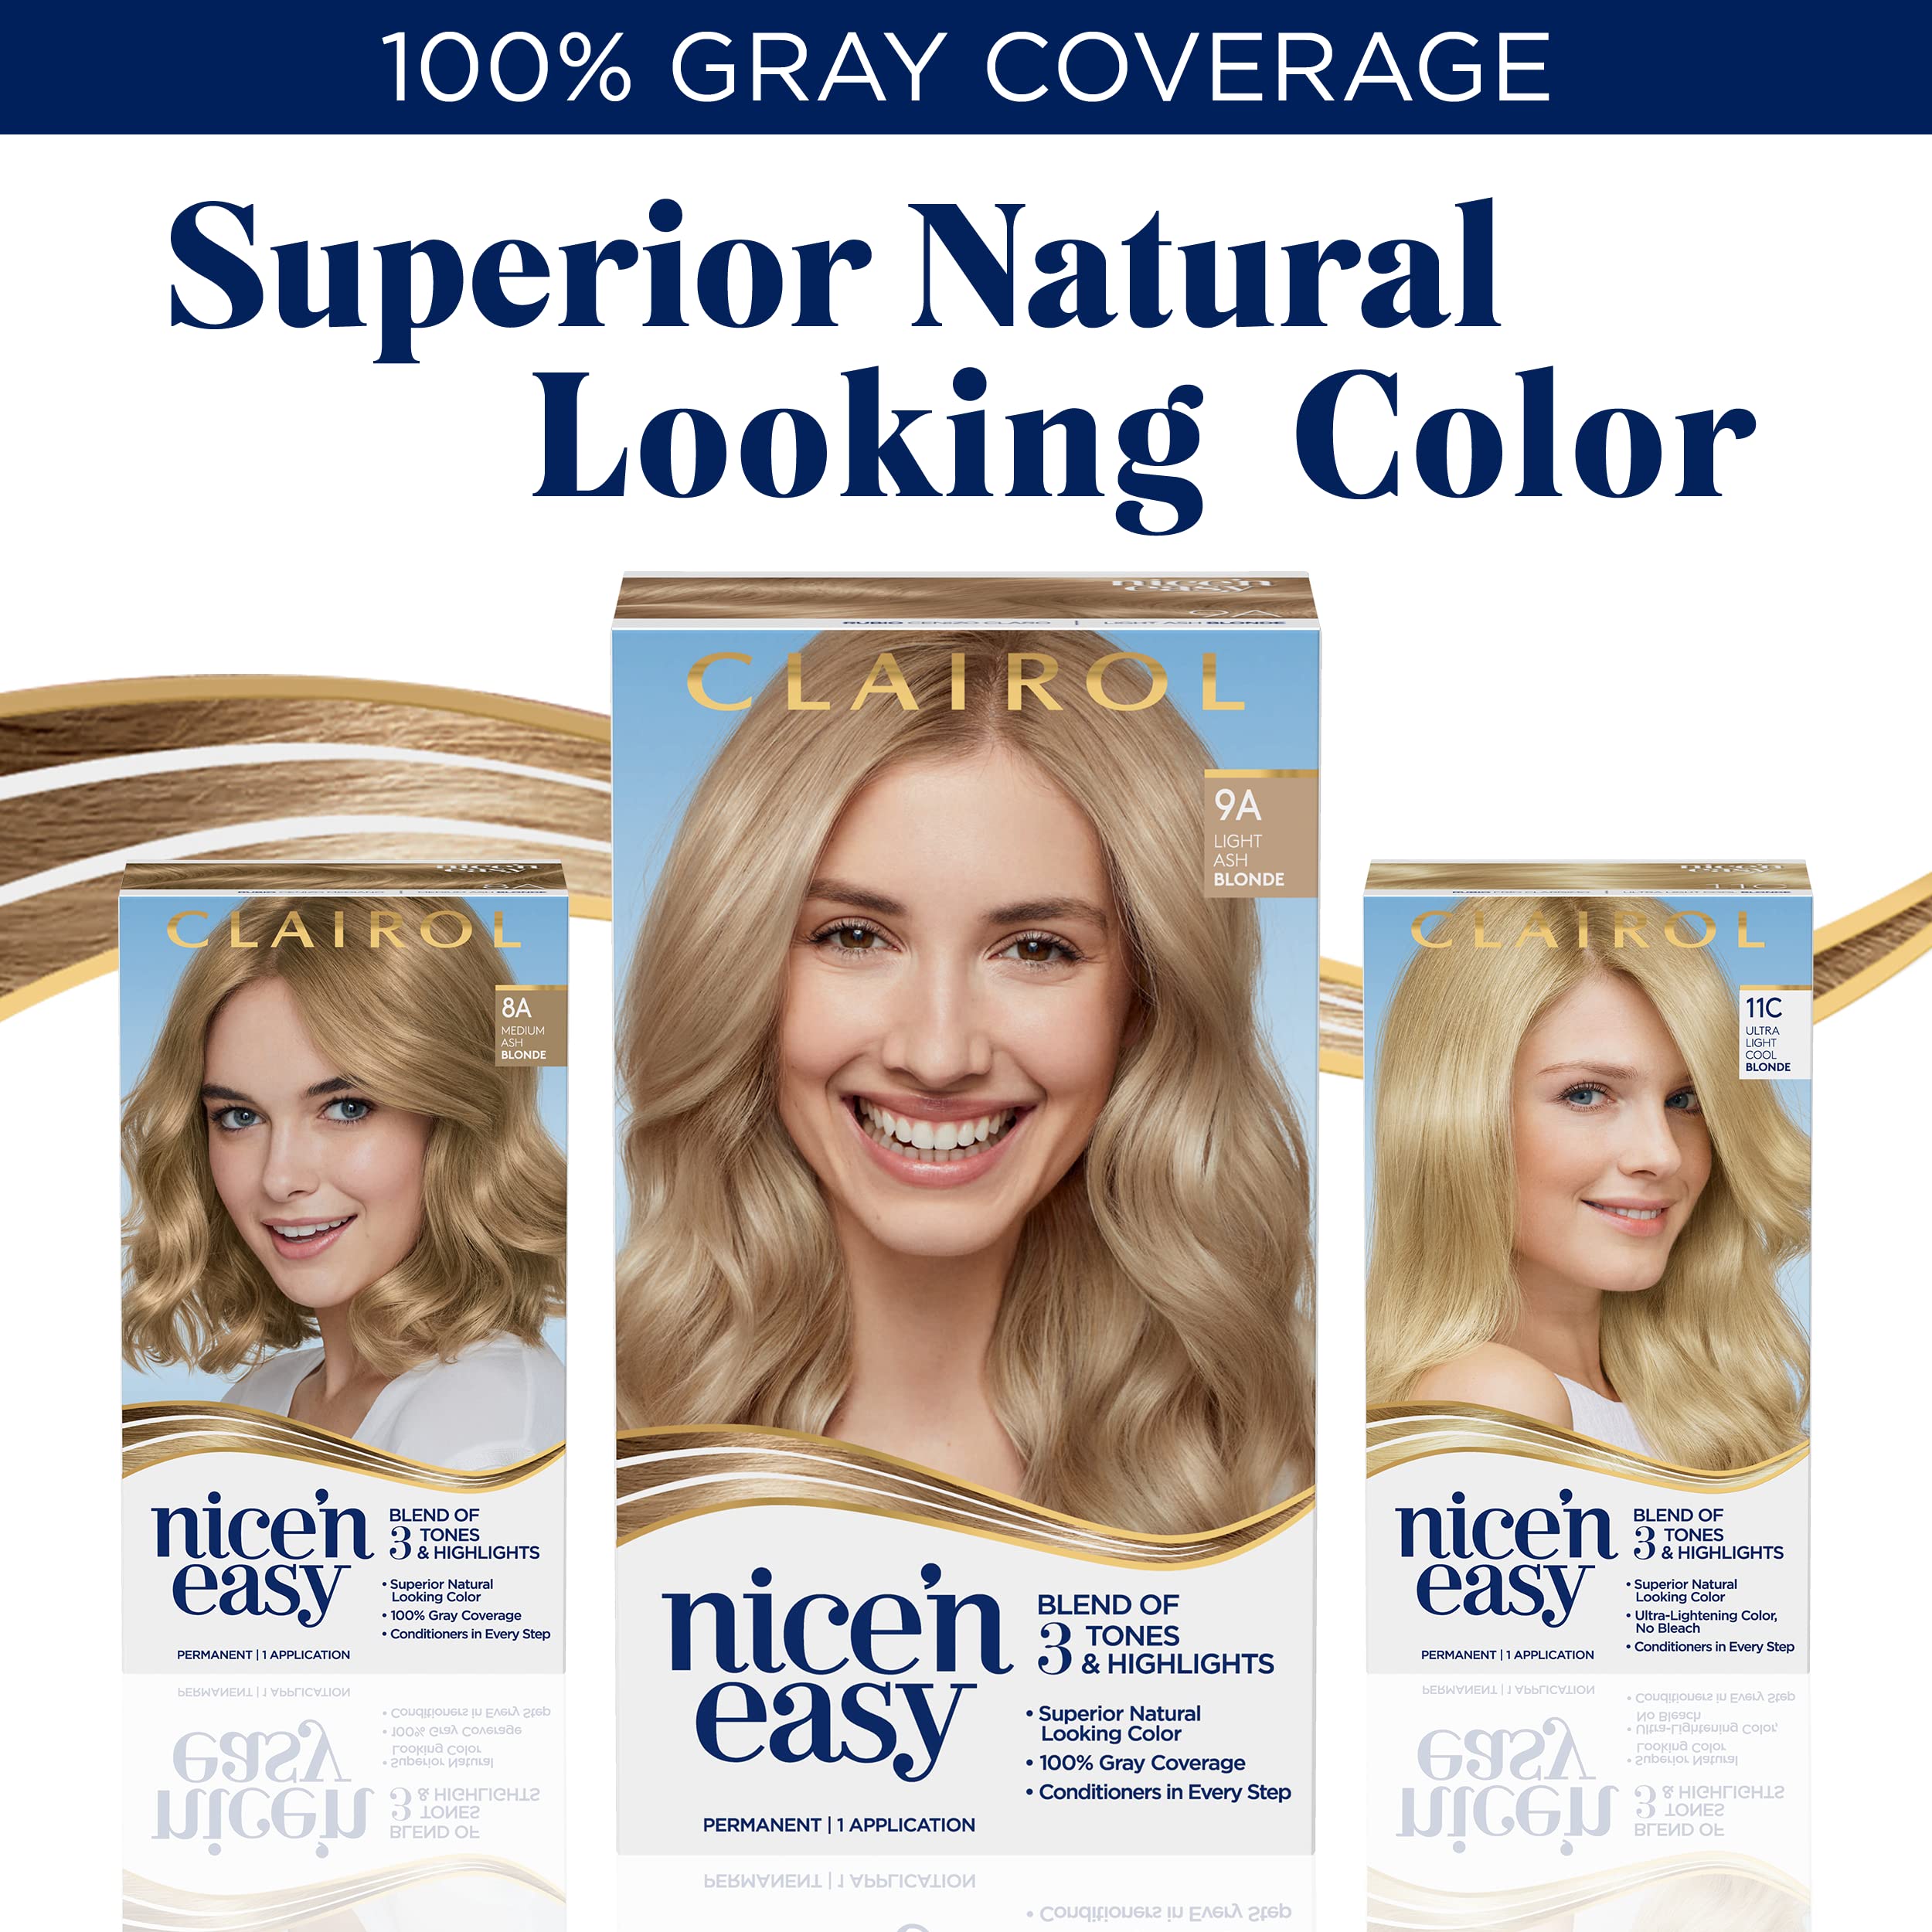 Clairol Nice'n Easy Permanent Hair Dye, 8A Medium Ash Blonde Hair Color, Pack of 2